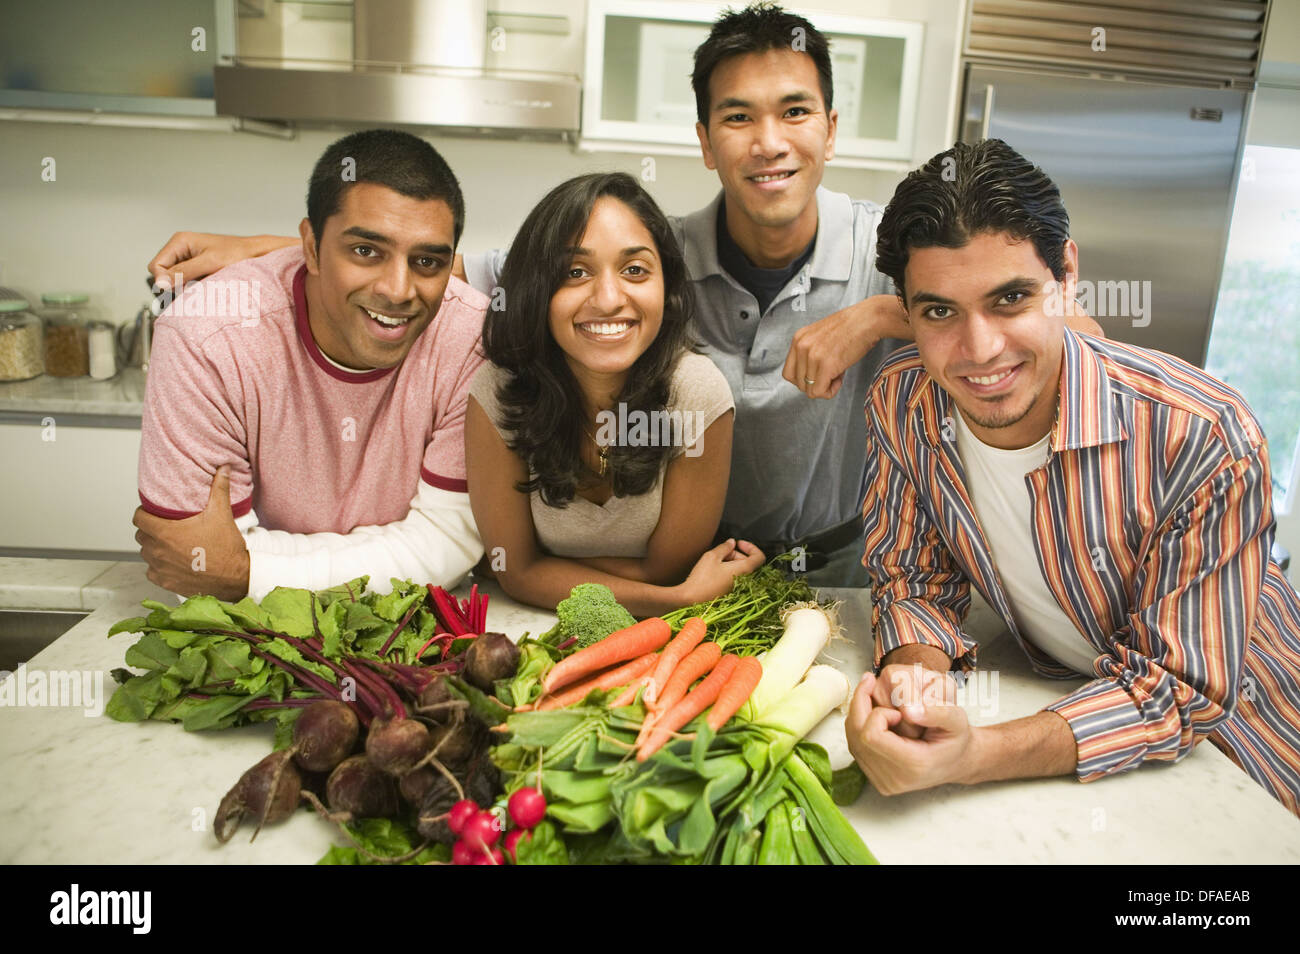 Grupo de jóvenes de etnias mixtas la celebración de verduras en la cocina Foto de stock